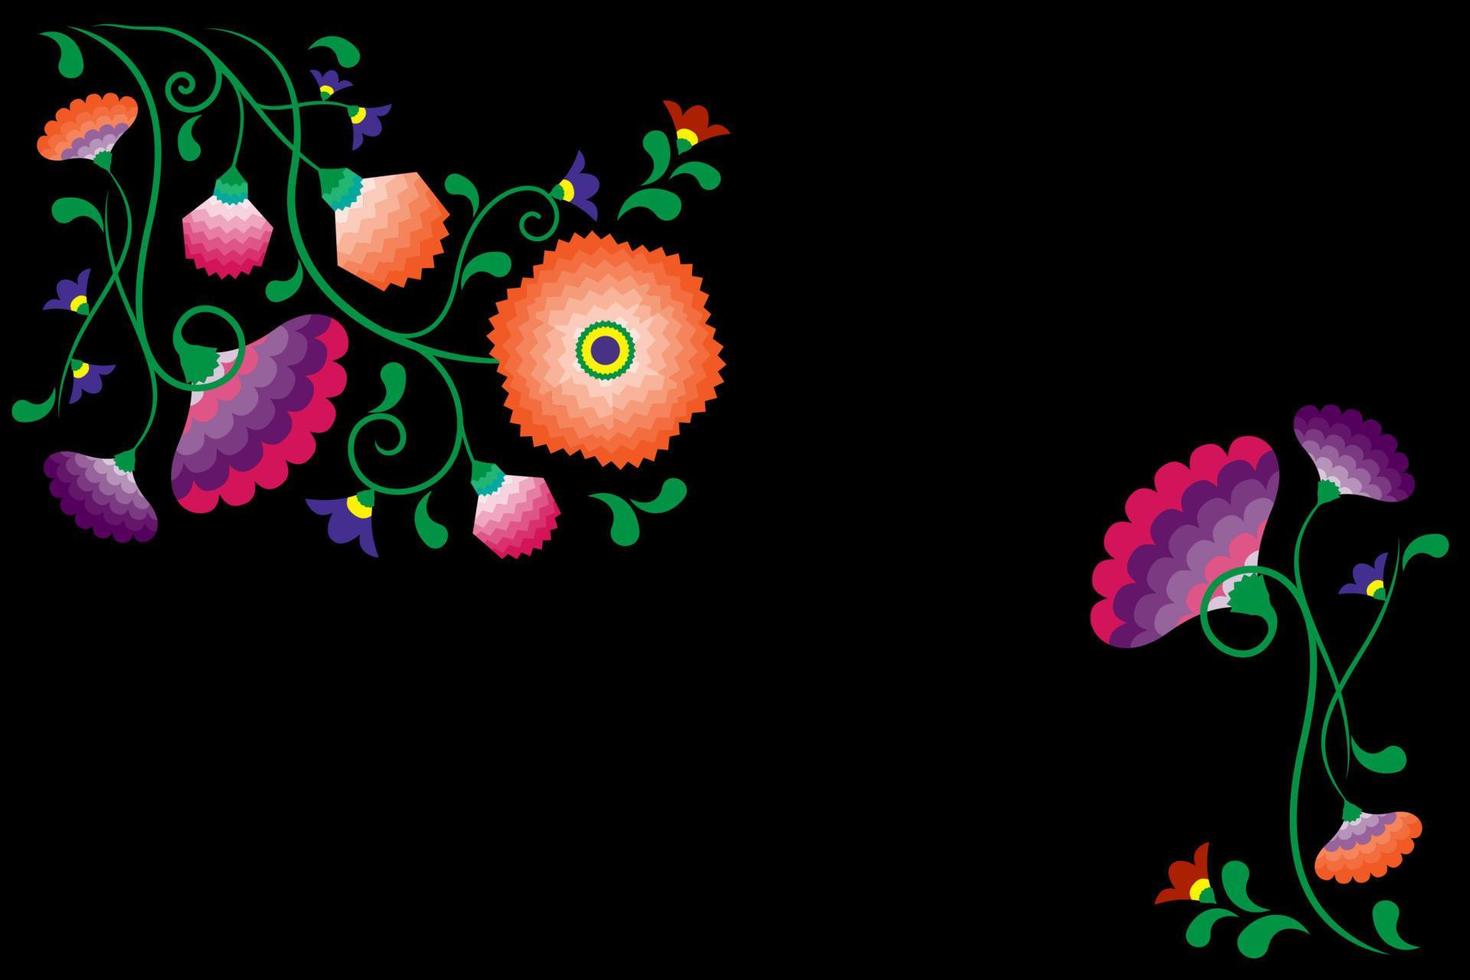 bordado de flores nativas patrón folclórico con influencia polaca y mexicana. floral tradicional decorativo étnico de moda en diseño simétrico, para moda, interior, papelería. vector aislado en negro